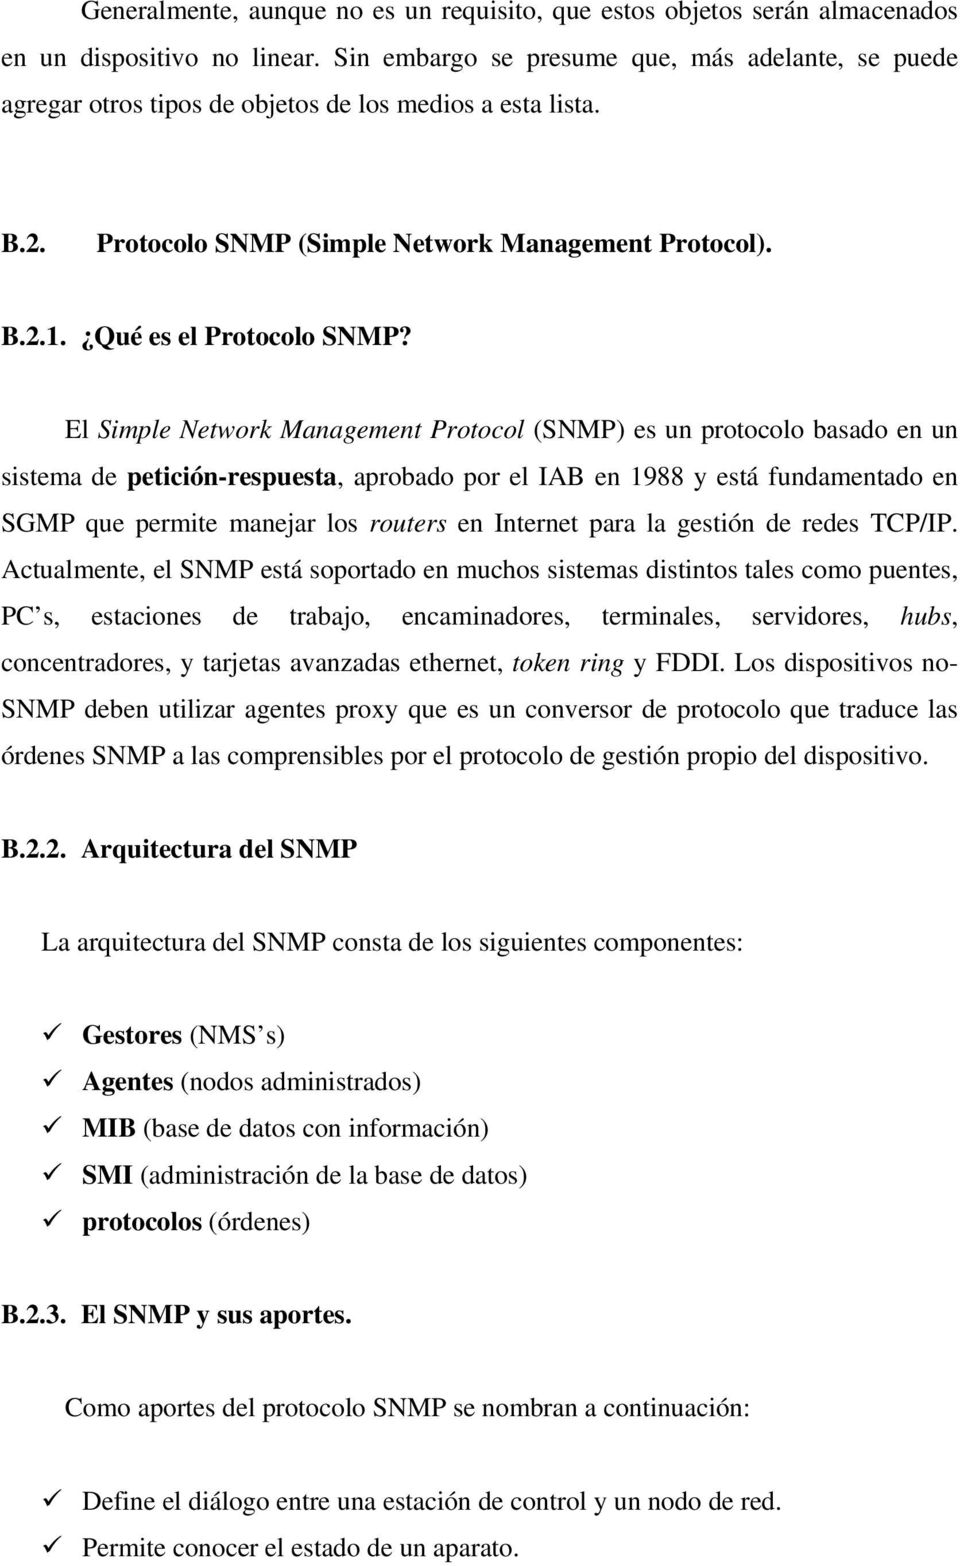 El Simple Network Management Protocol (SNMP) es un protocolo basado en un sistema de petición-respuesta, aprobado por el IAB en 1988 y está fundamentado en SGMP que permite manejar los routers en